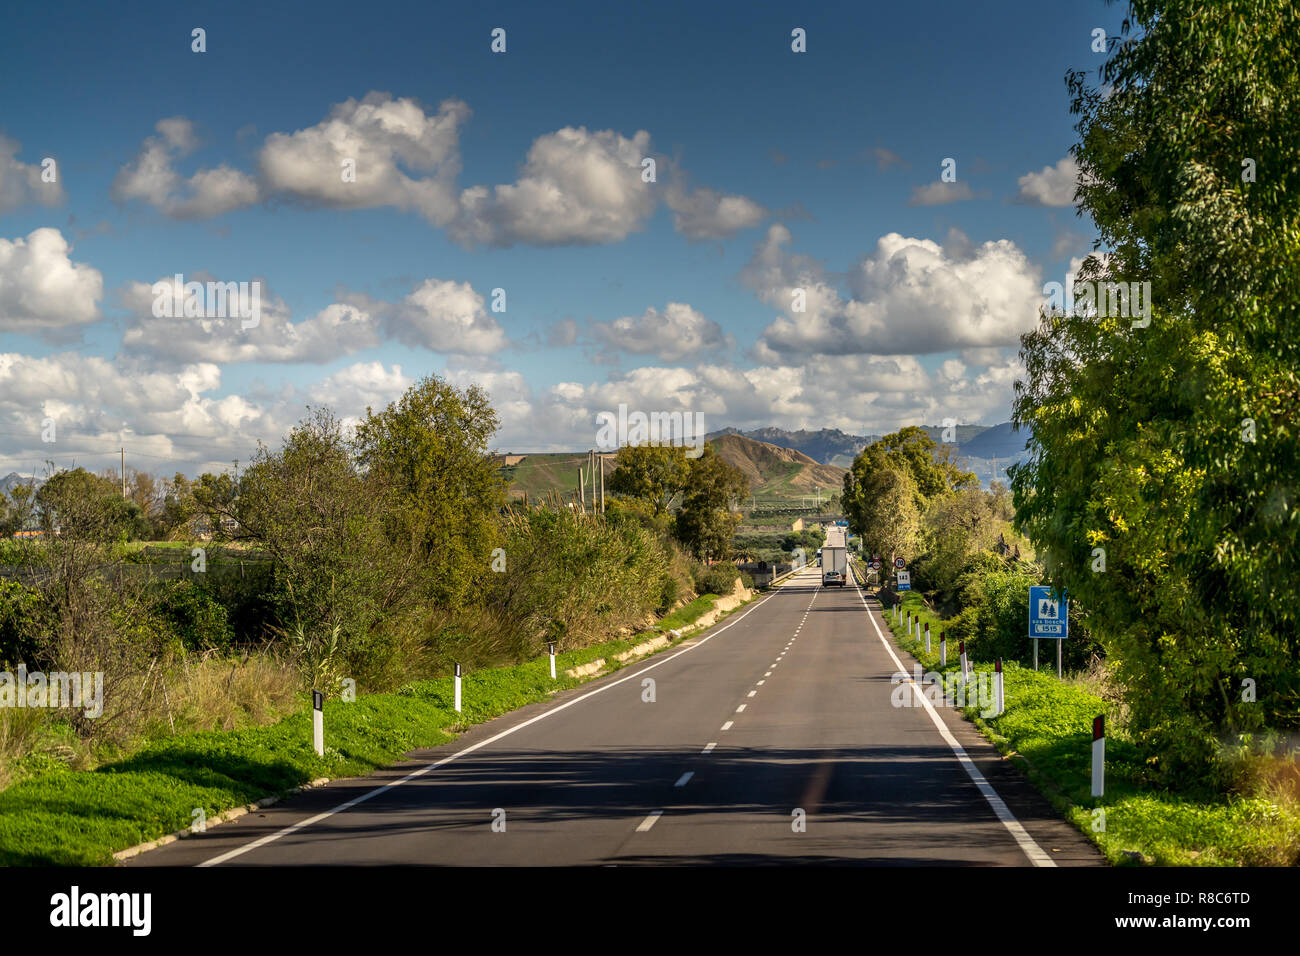 Reisen in Italien - Panorama Blick auf Straßen, Häuser, Berge, und agrarischen Felder in der Nähe von Agrigento, Sizilien Italien Stockfoto